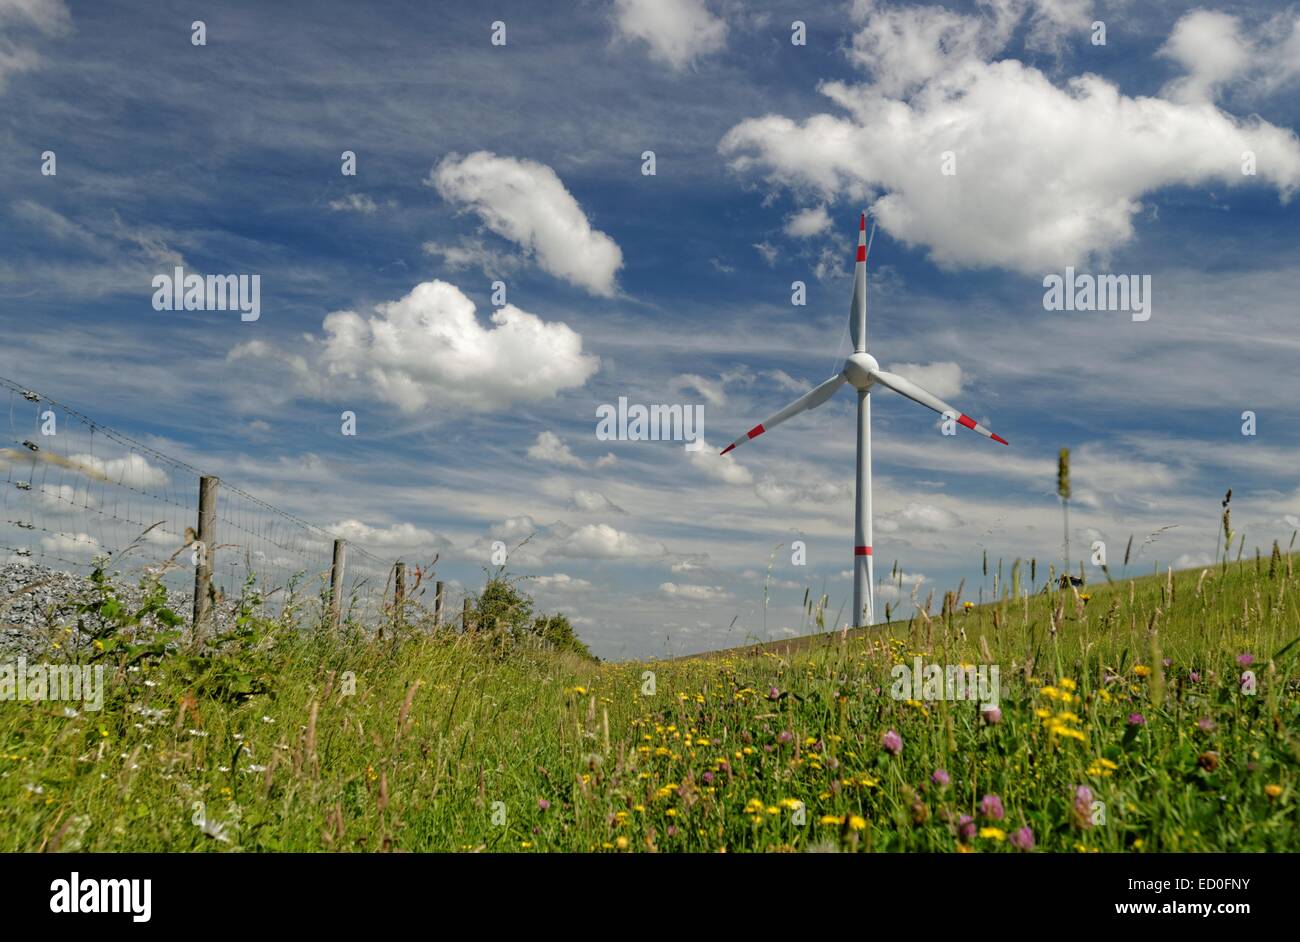 Deutschland, Ostfriesland, Windturbine auf Wiese gegen bewölktem Himmel Stockfoto